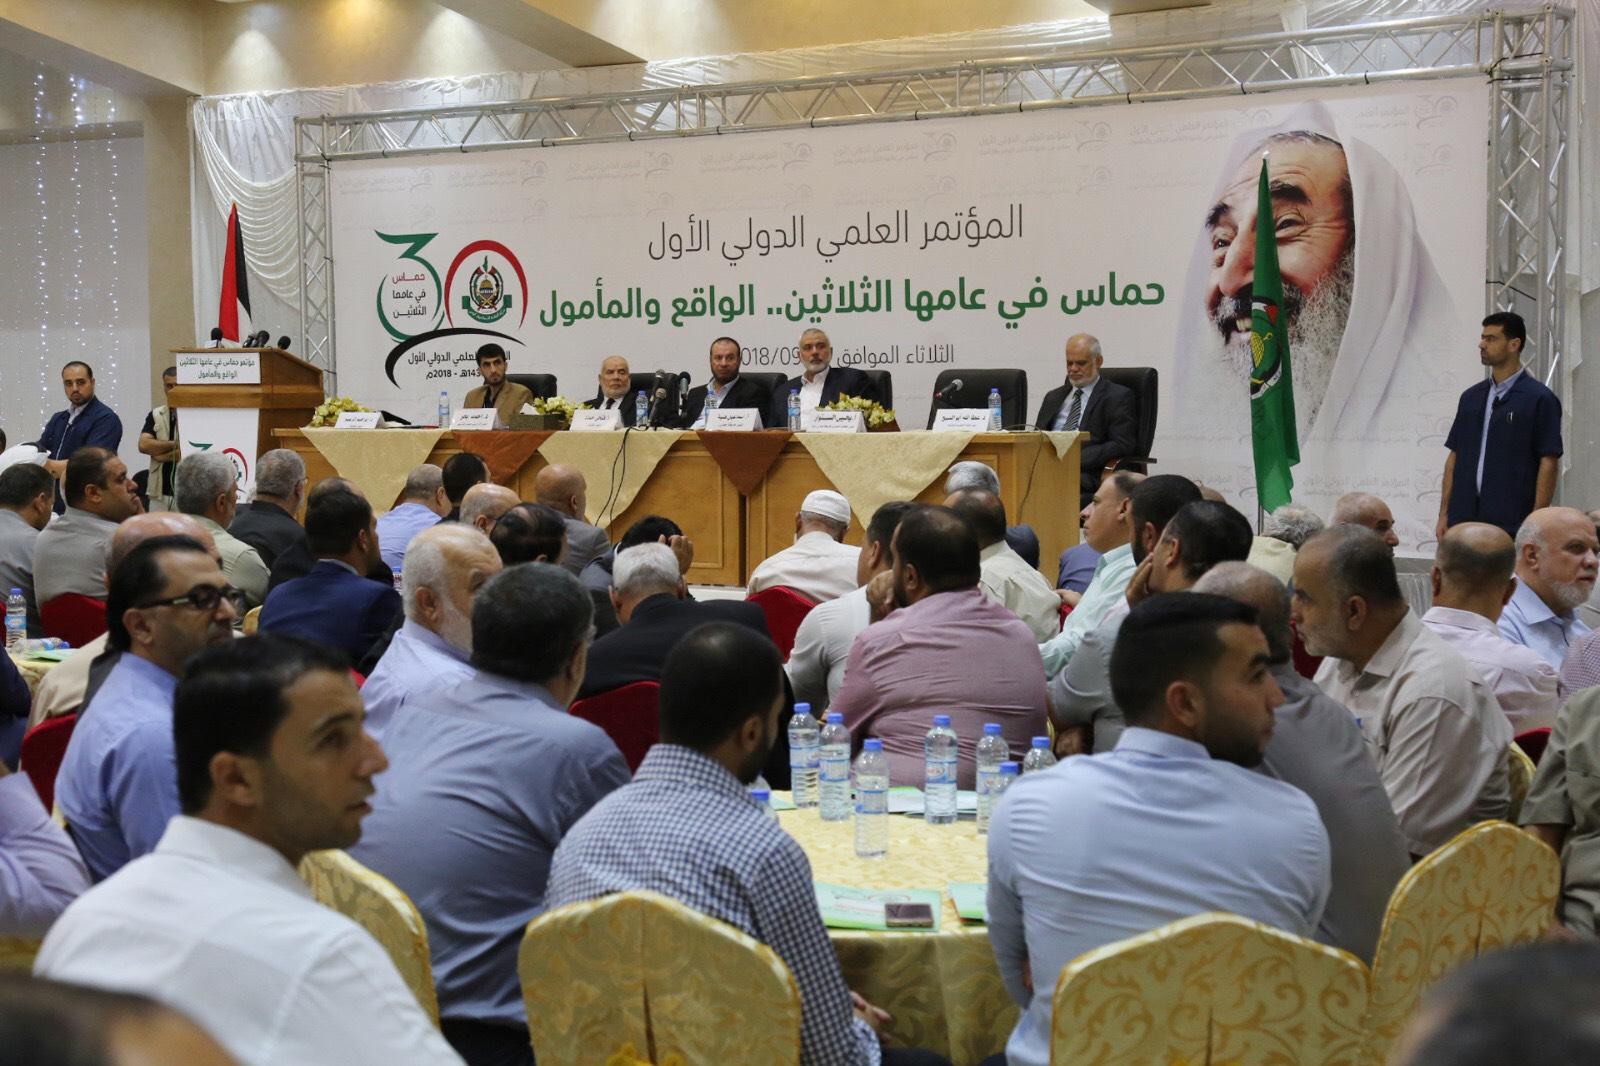 انطلاق أعمال المؤتمر العلمي الدولي الأول لـحماس بغزة